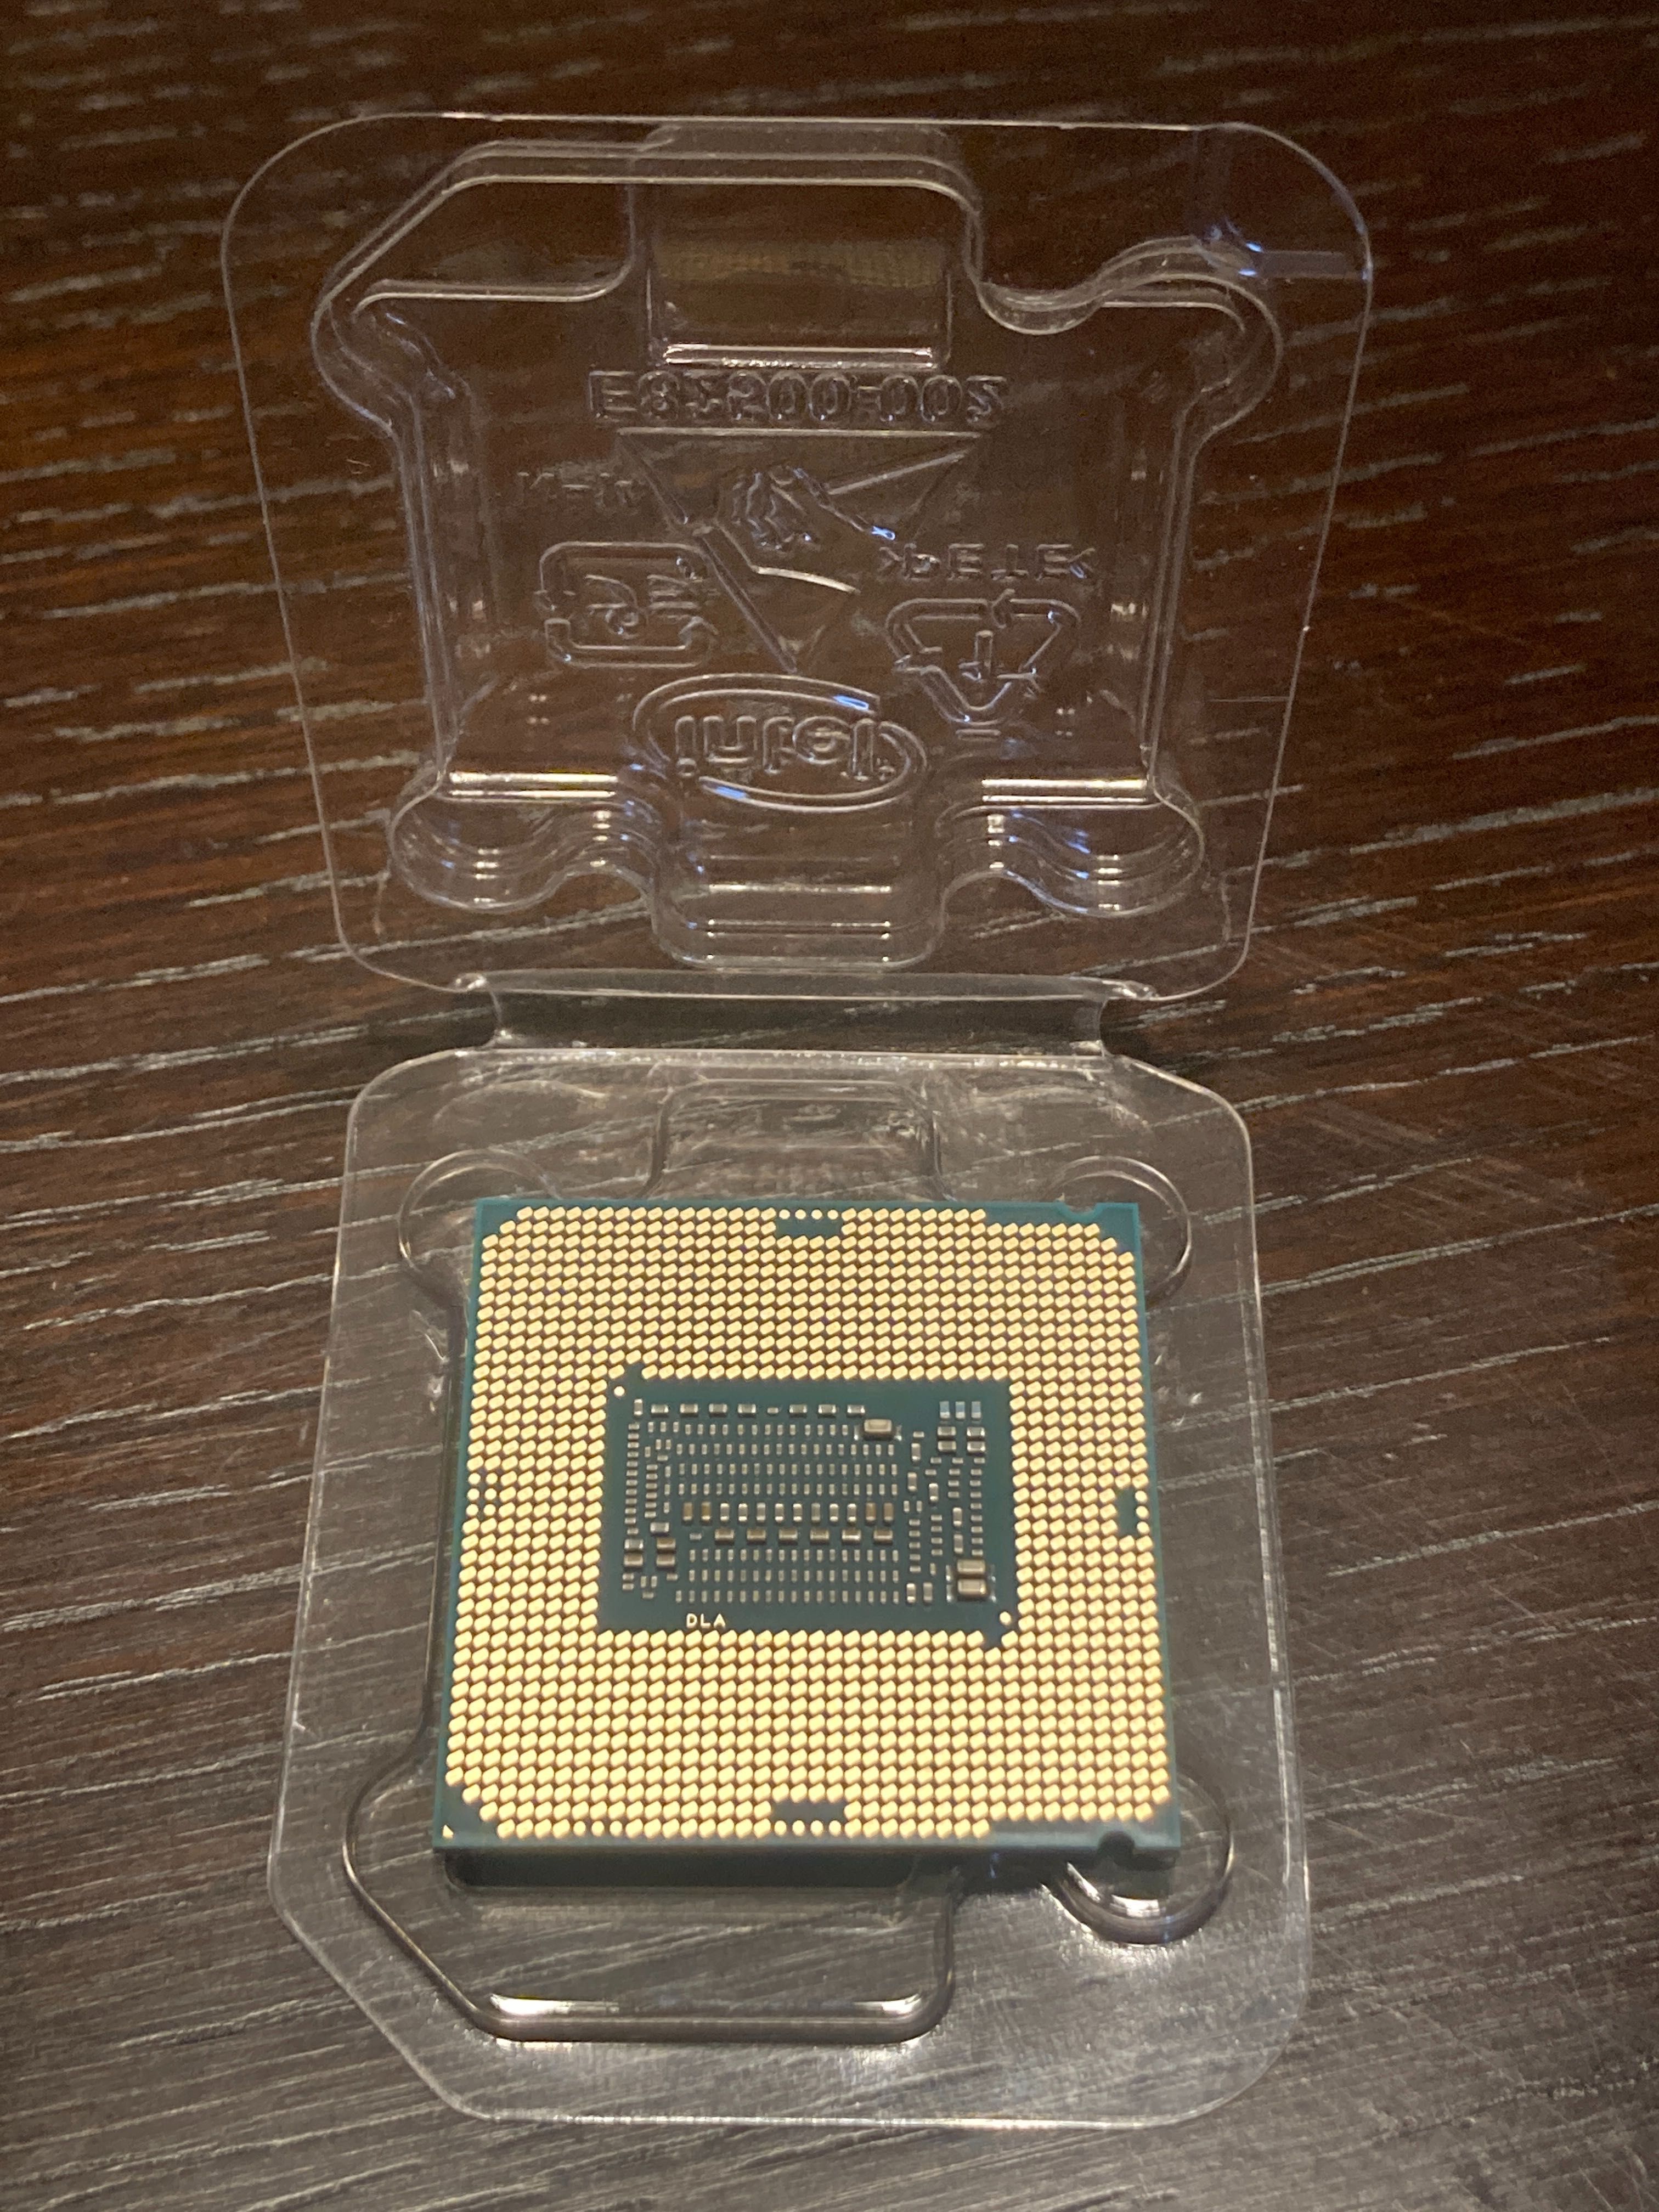 Intel core i5-9600KF unlocked